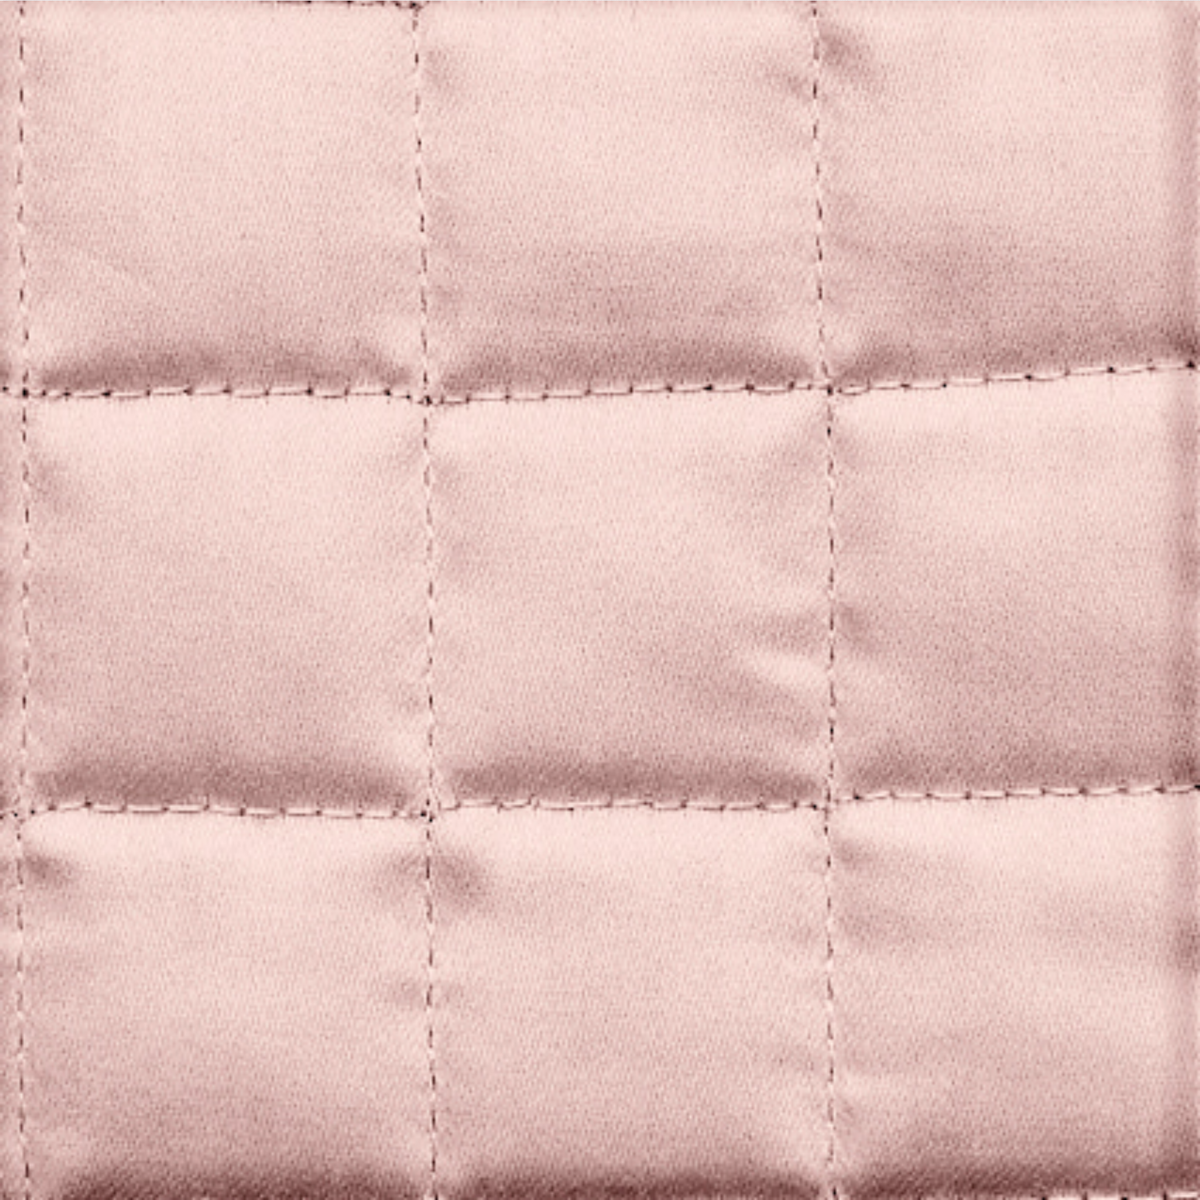 Fabric Closeup of Signoria Masaccio Bedding in Rose Quartz Color